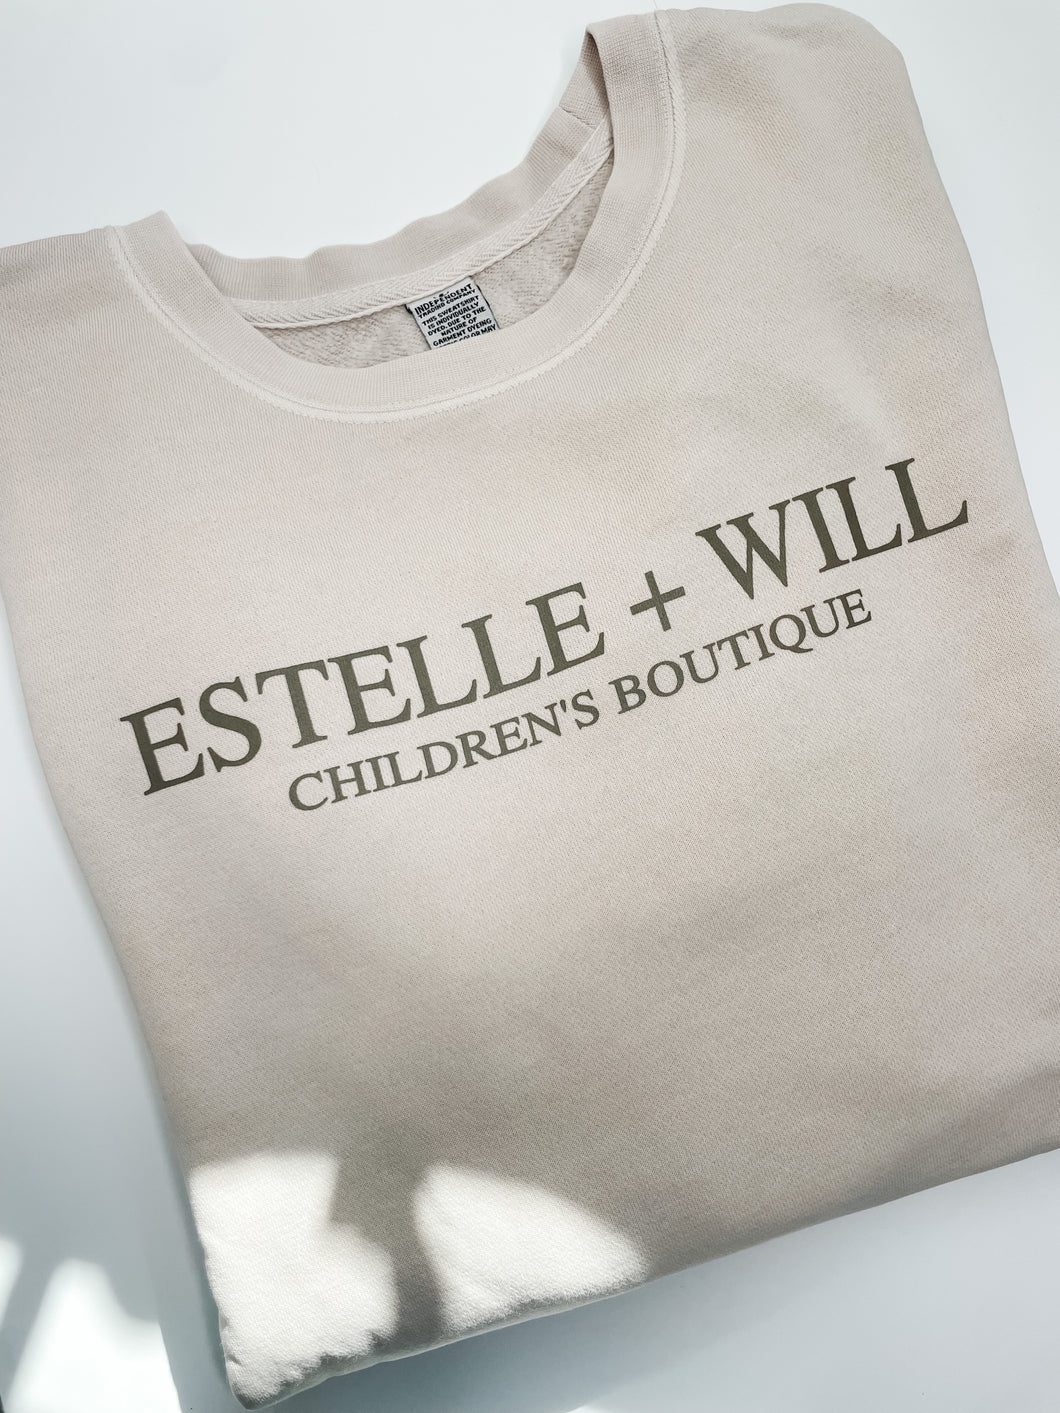 Estelle + Will Crew- Sand & Taupe